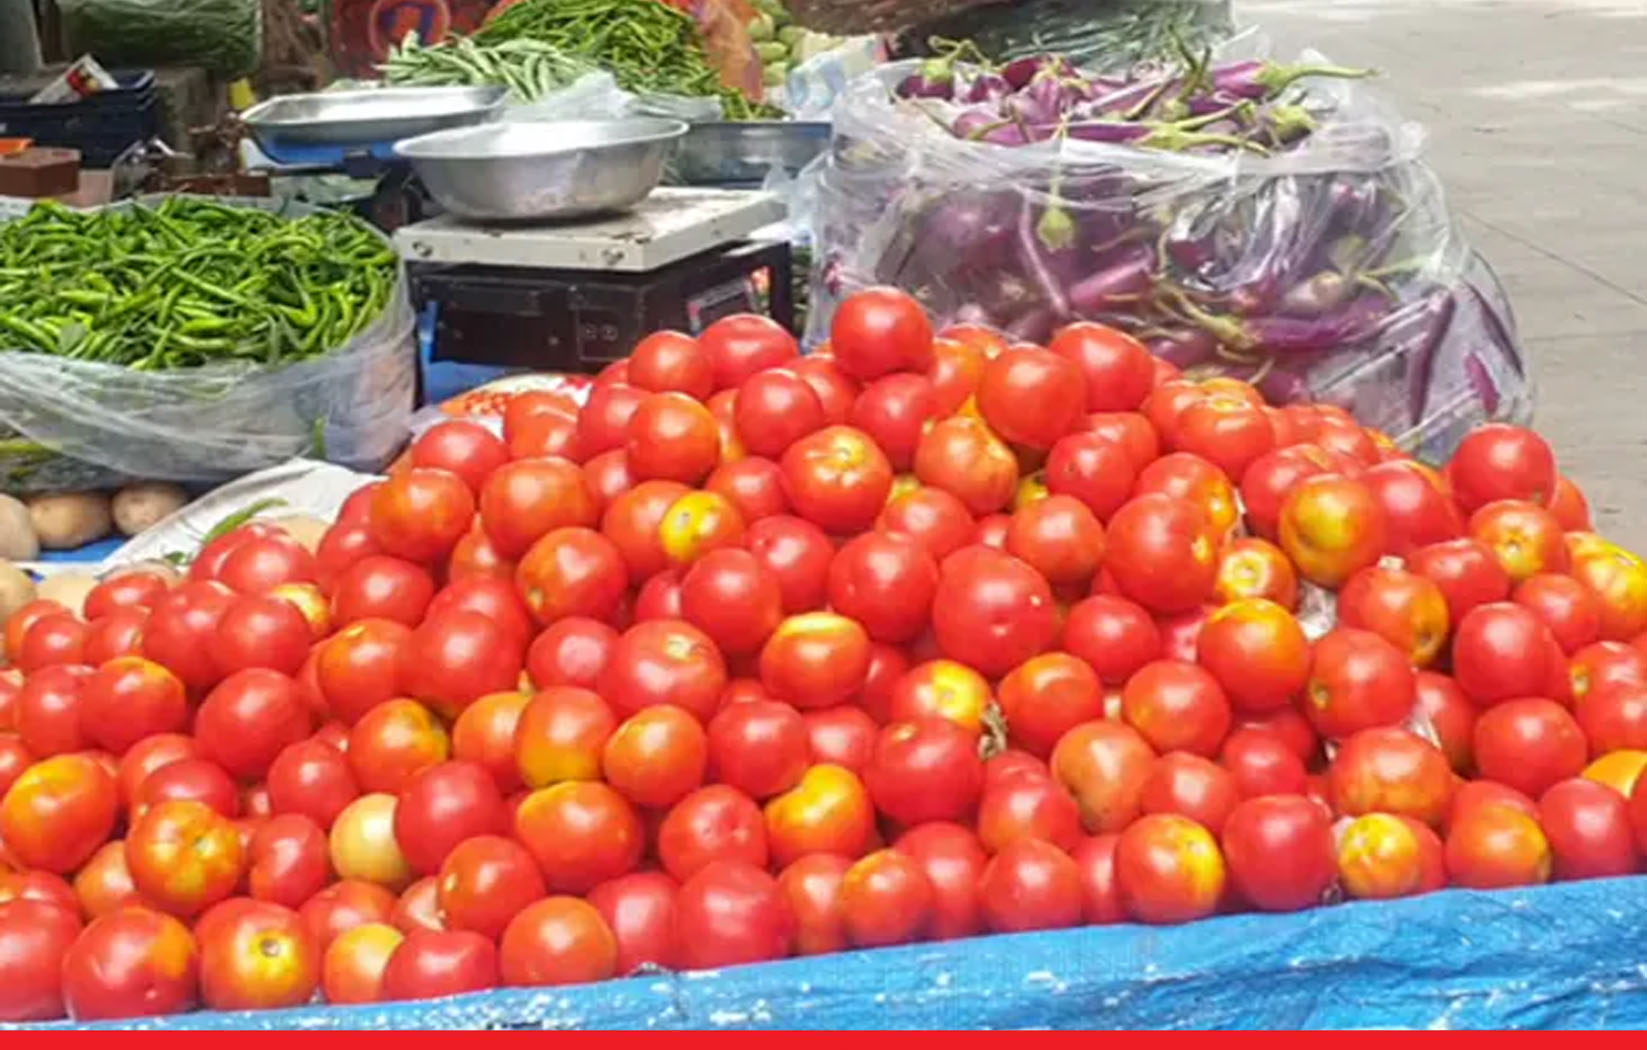 सब्जियों पर महंगाई की मार: टमाटर 160 रुपए के पार, हरी मिर्च और अदरक ने भी बिगाड़ा स्वाद